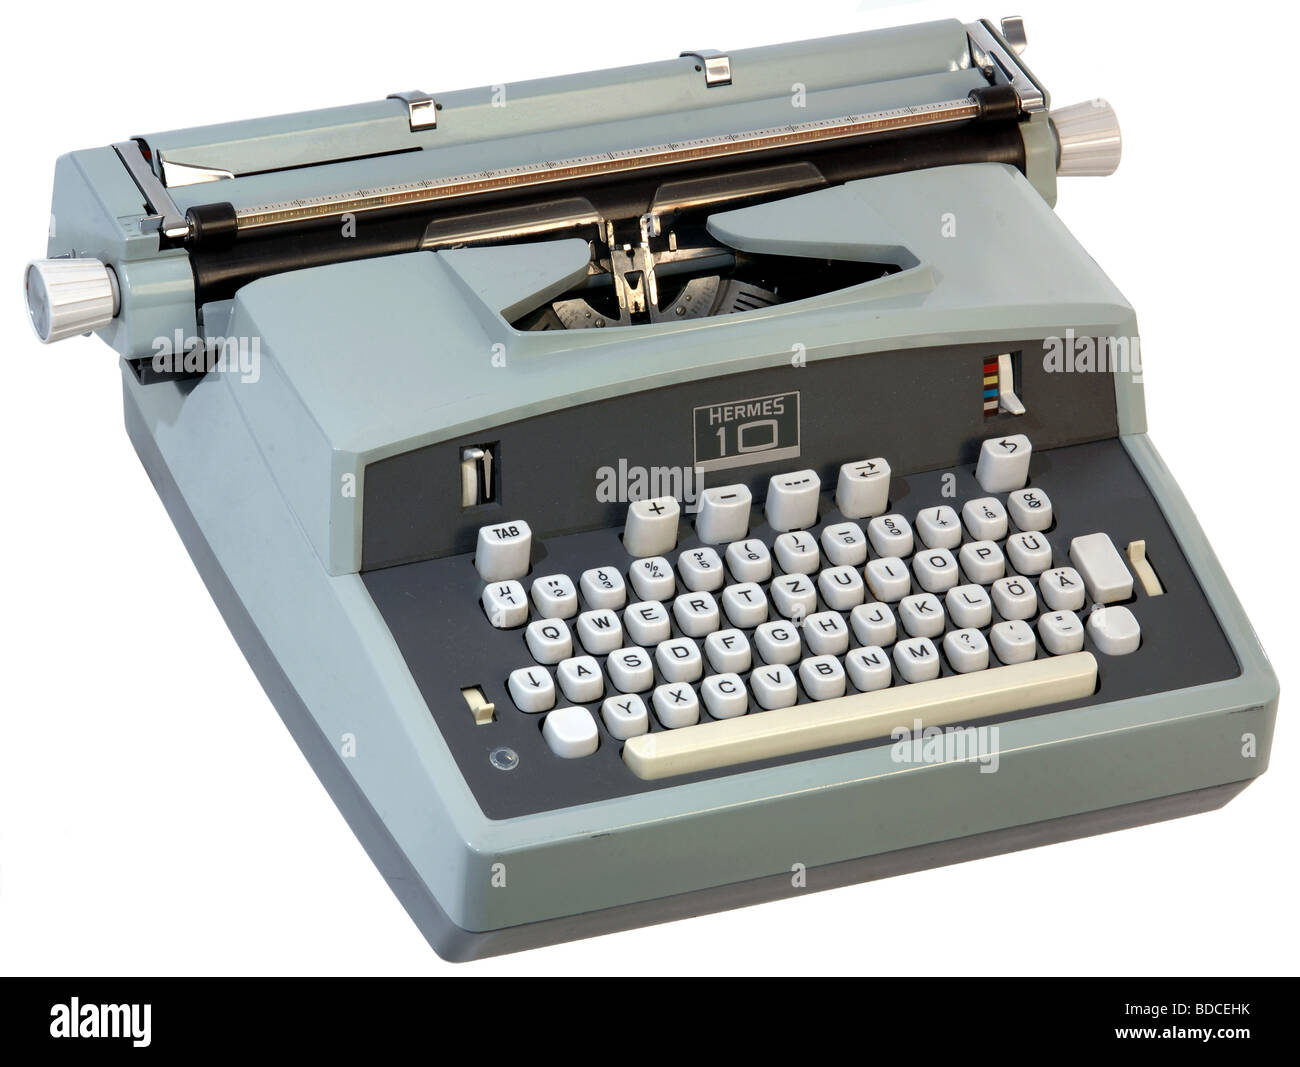 Ufficio, attrezzatura per ufficio, macchina da scrivere elettrica Hermes 10, prodotta da Paillard, Svizzera, circa 1965, Foto Stock